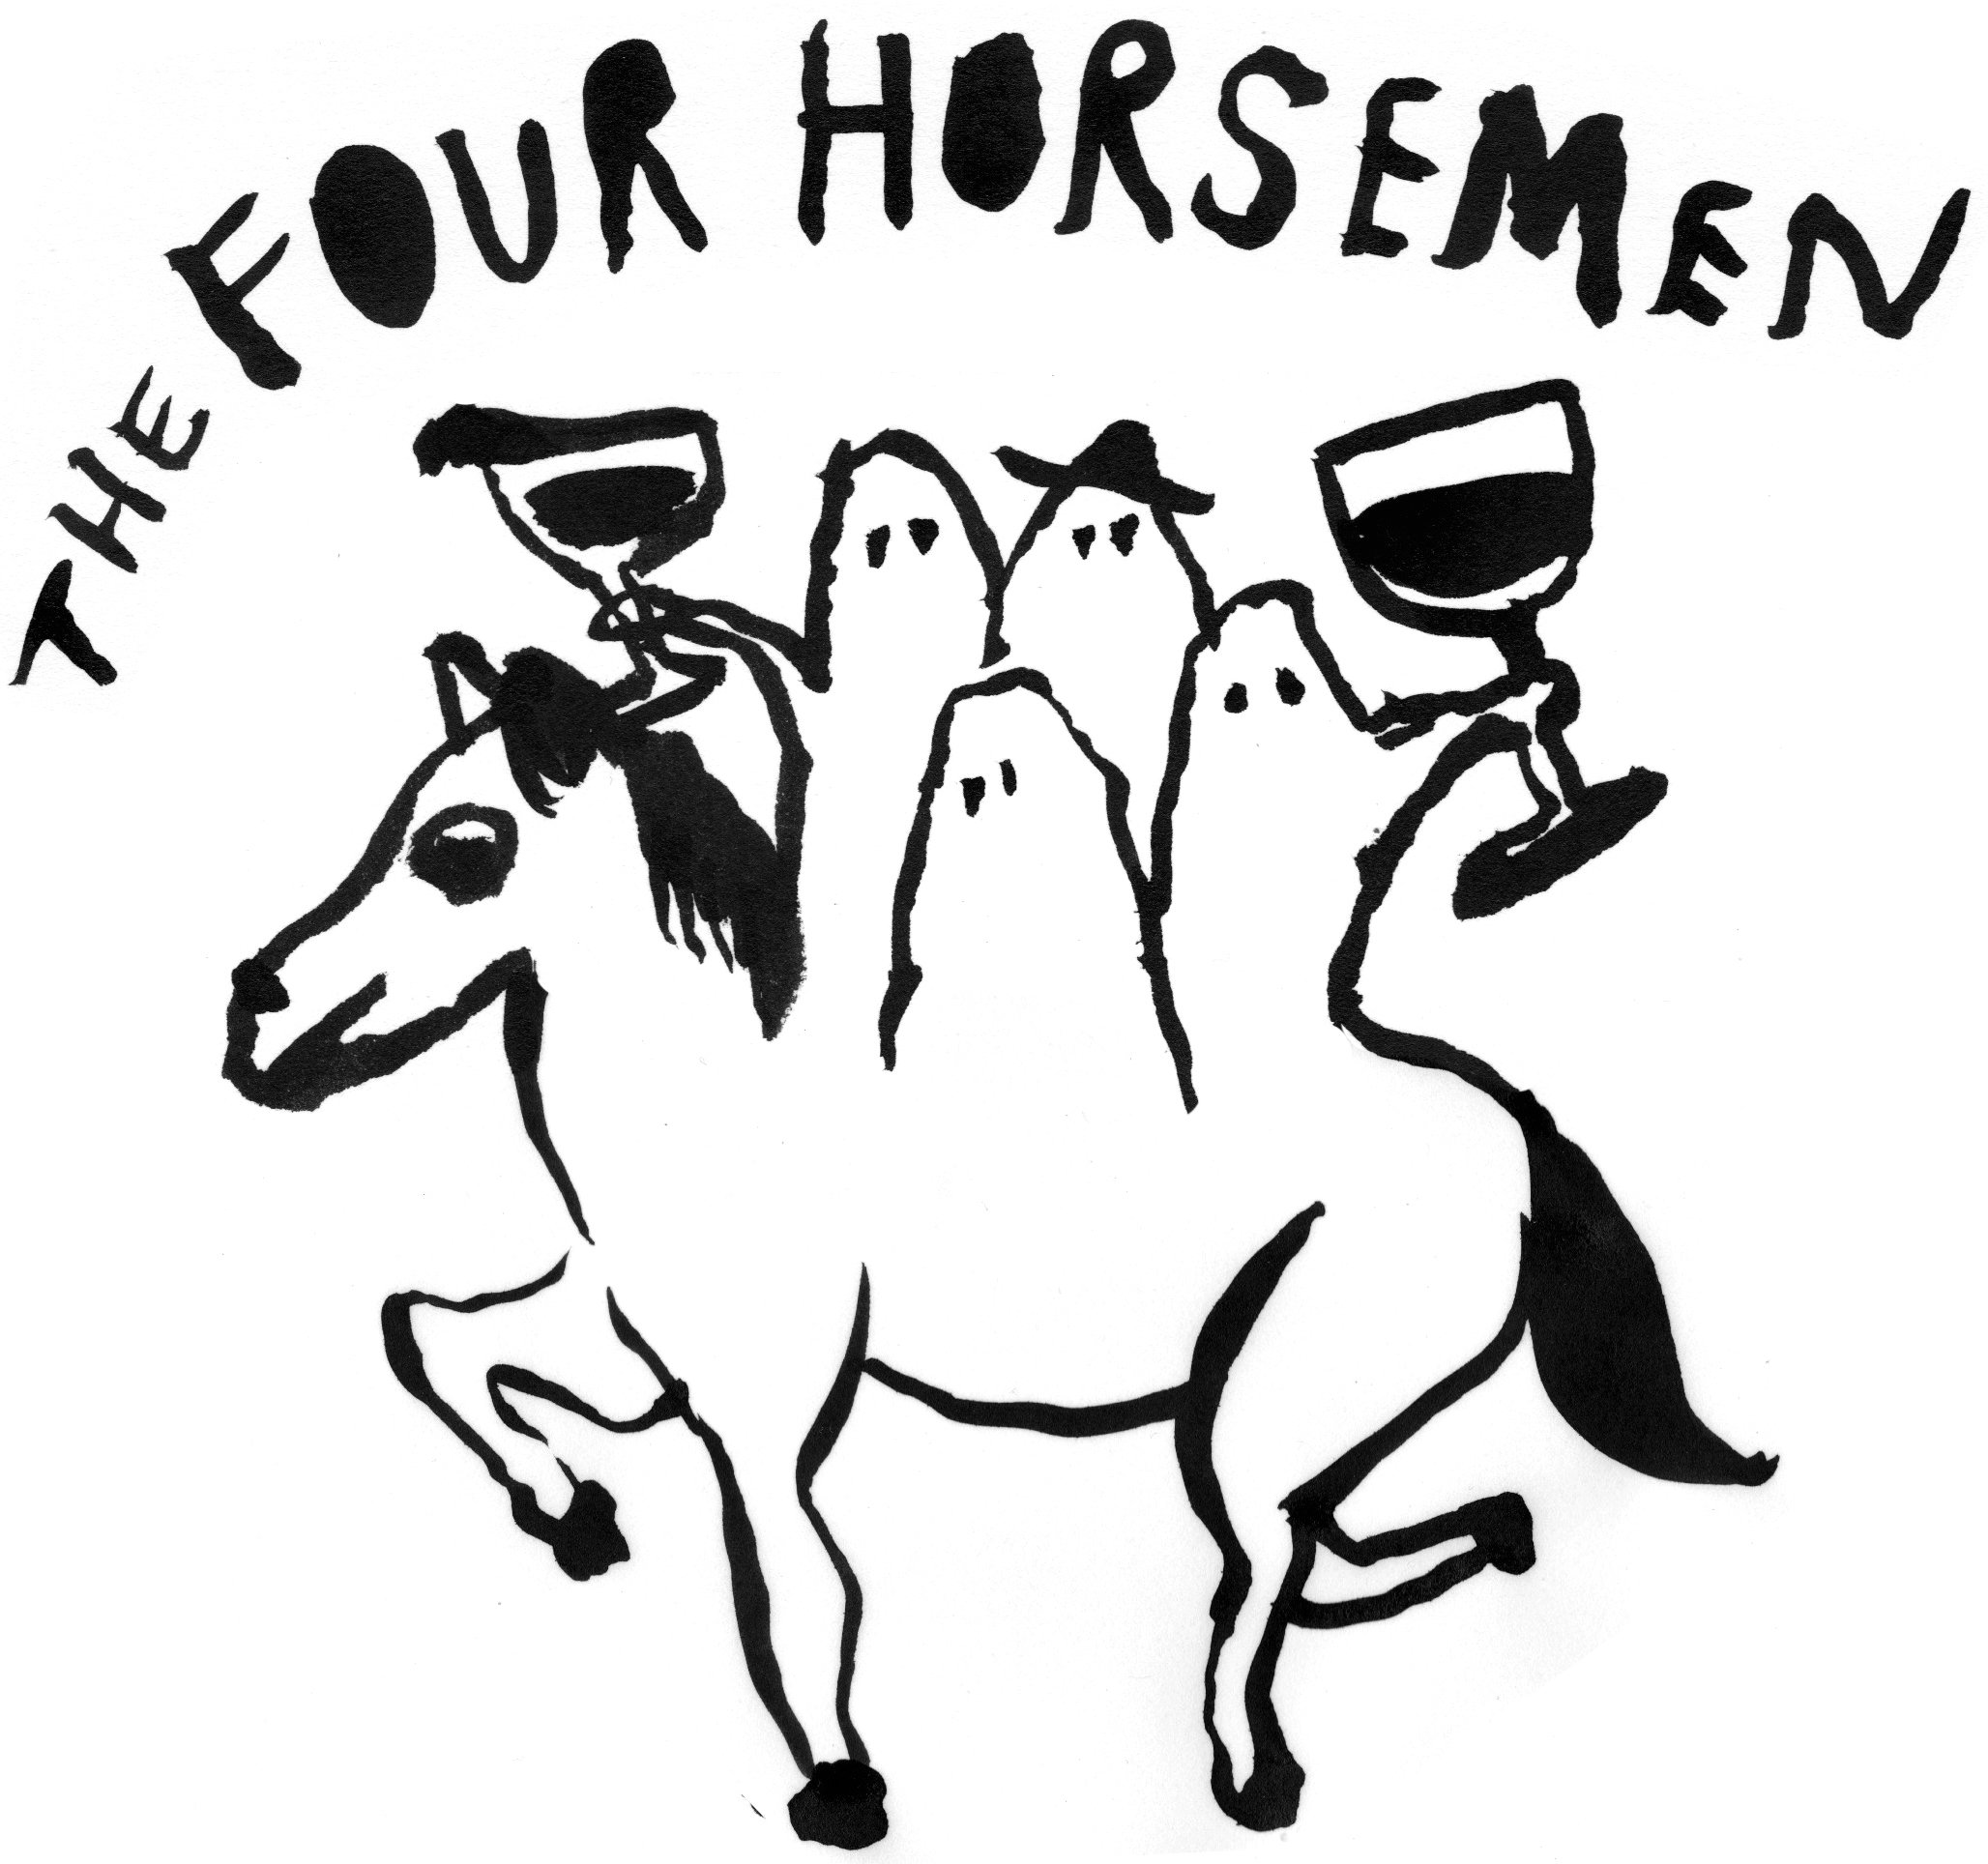 The Four Horseman - Brooklyn, NY